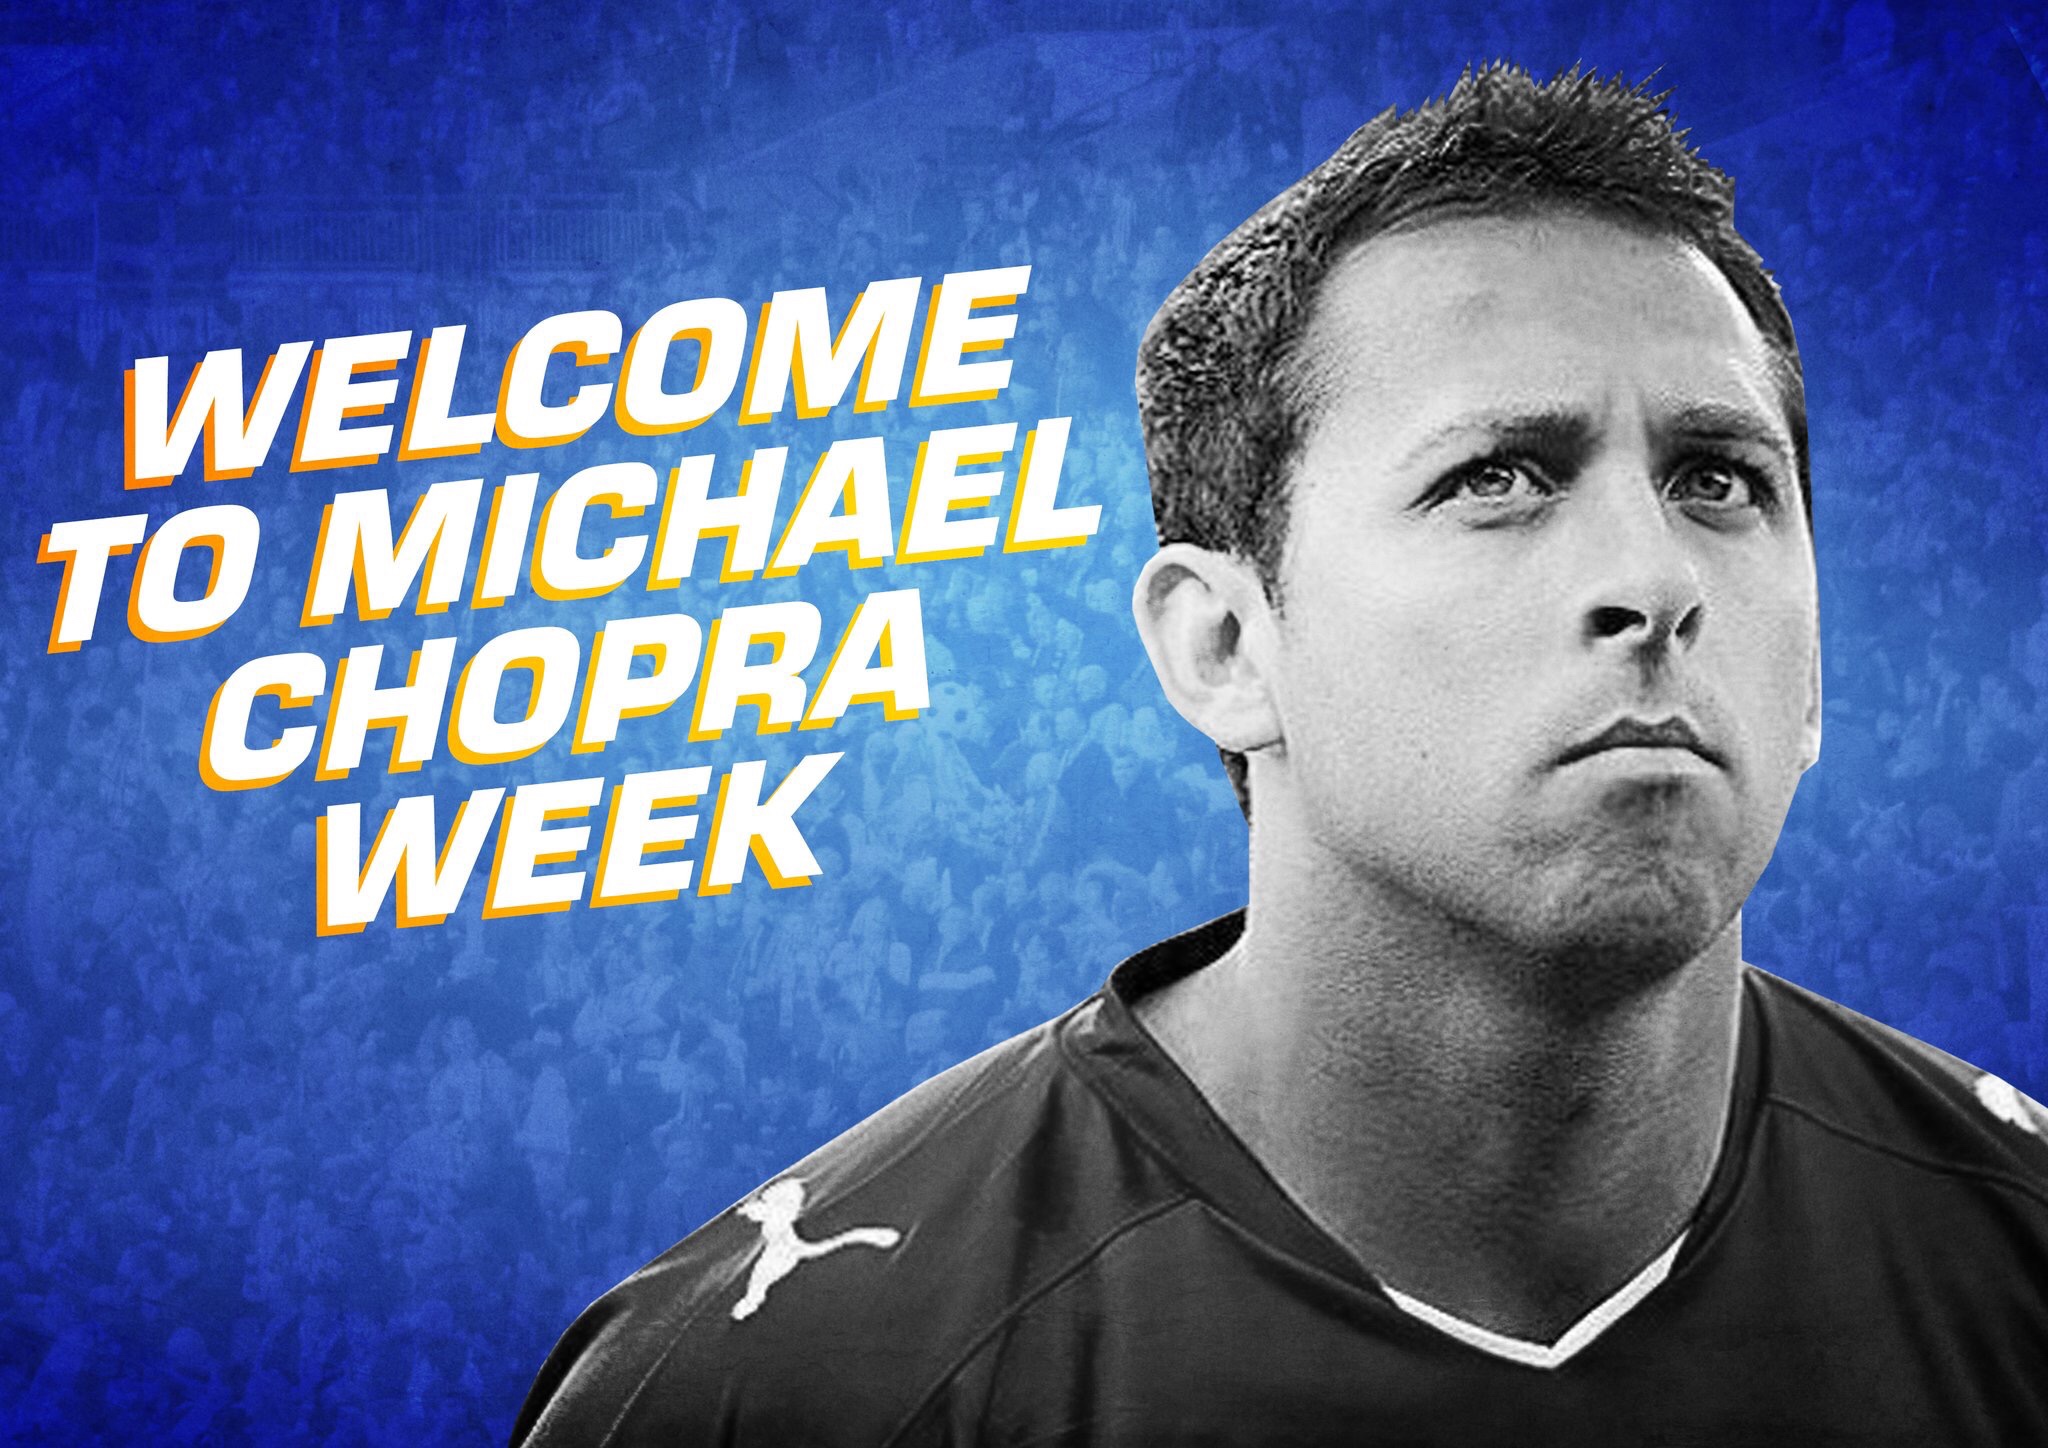 Welcome to Michael Chopra Week